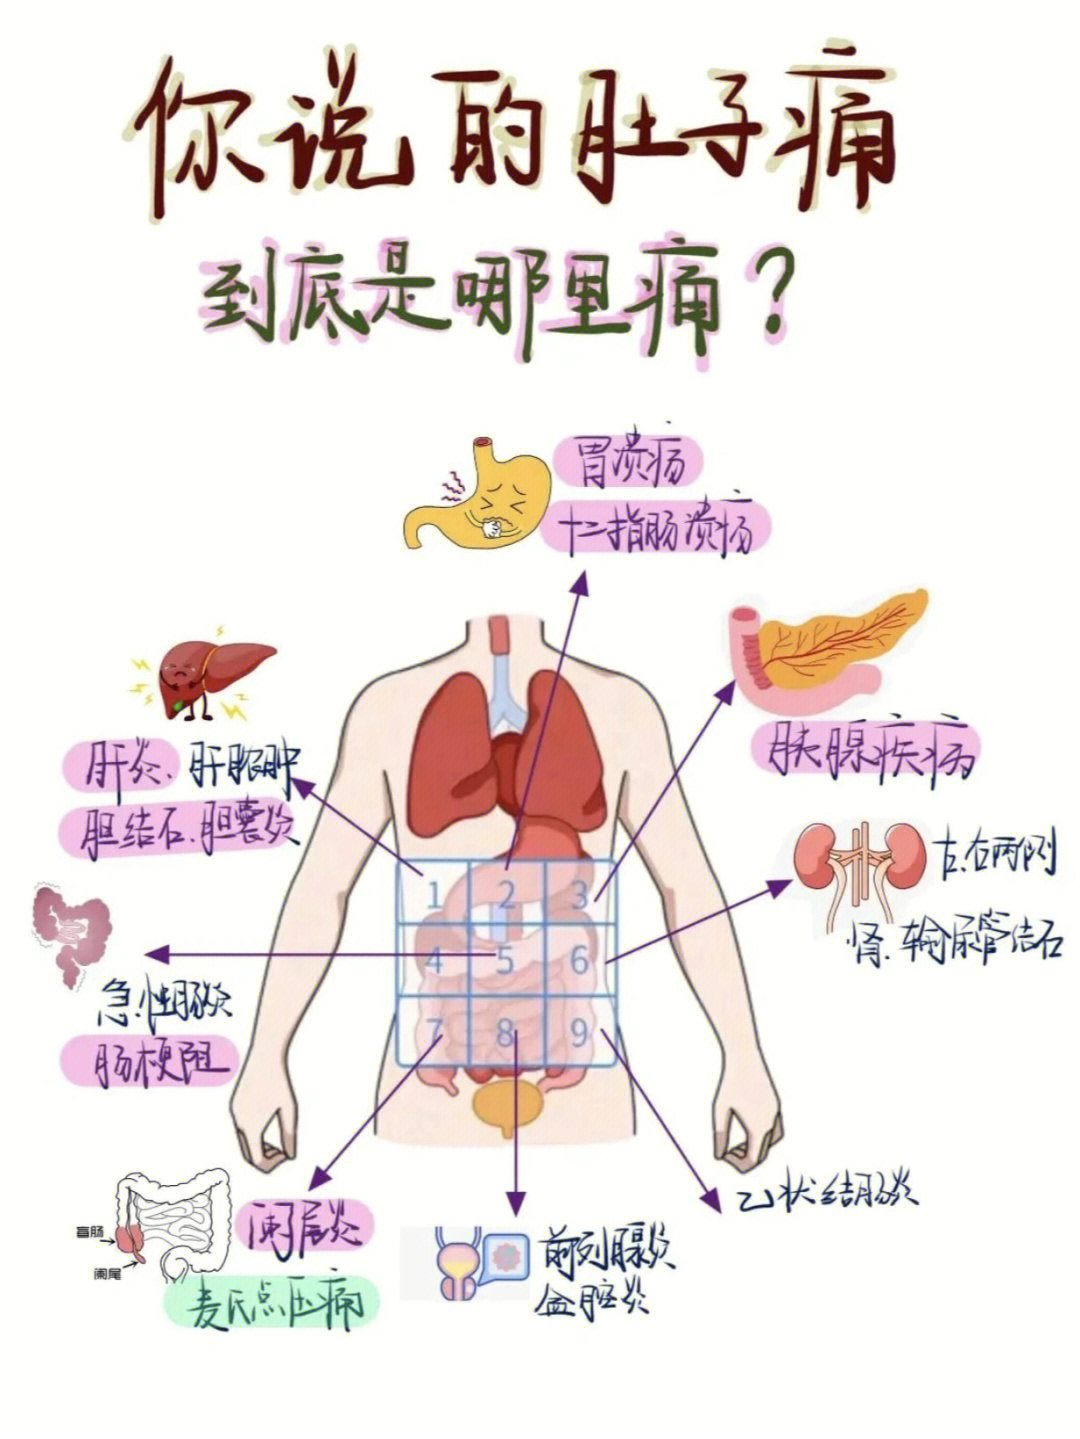 腹部九分法对应器官图片